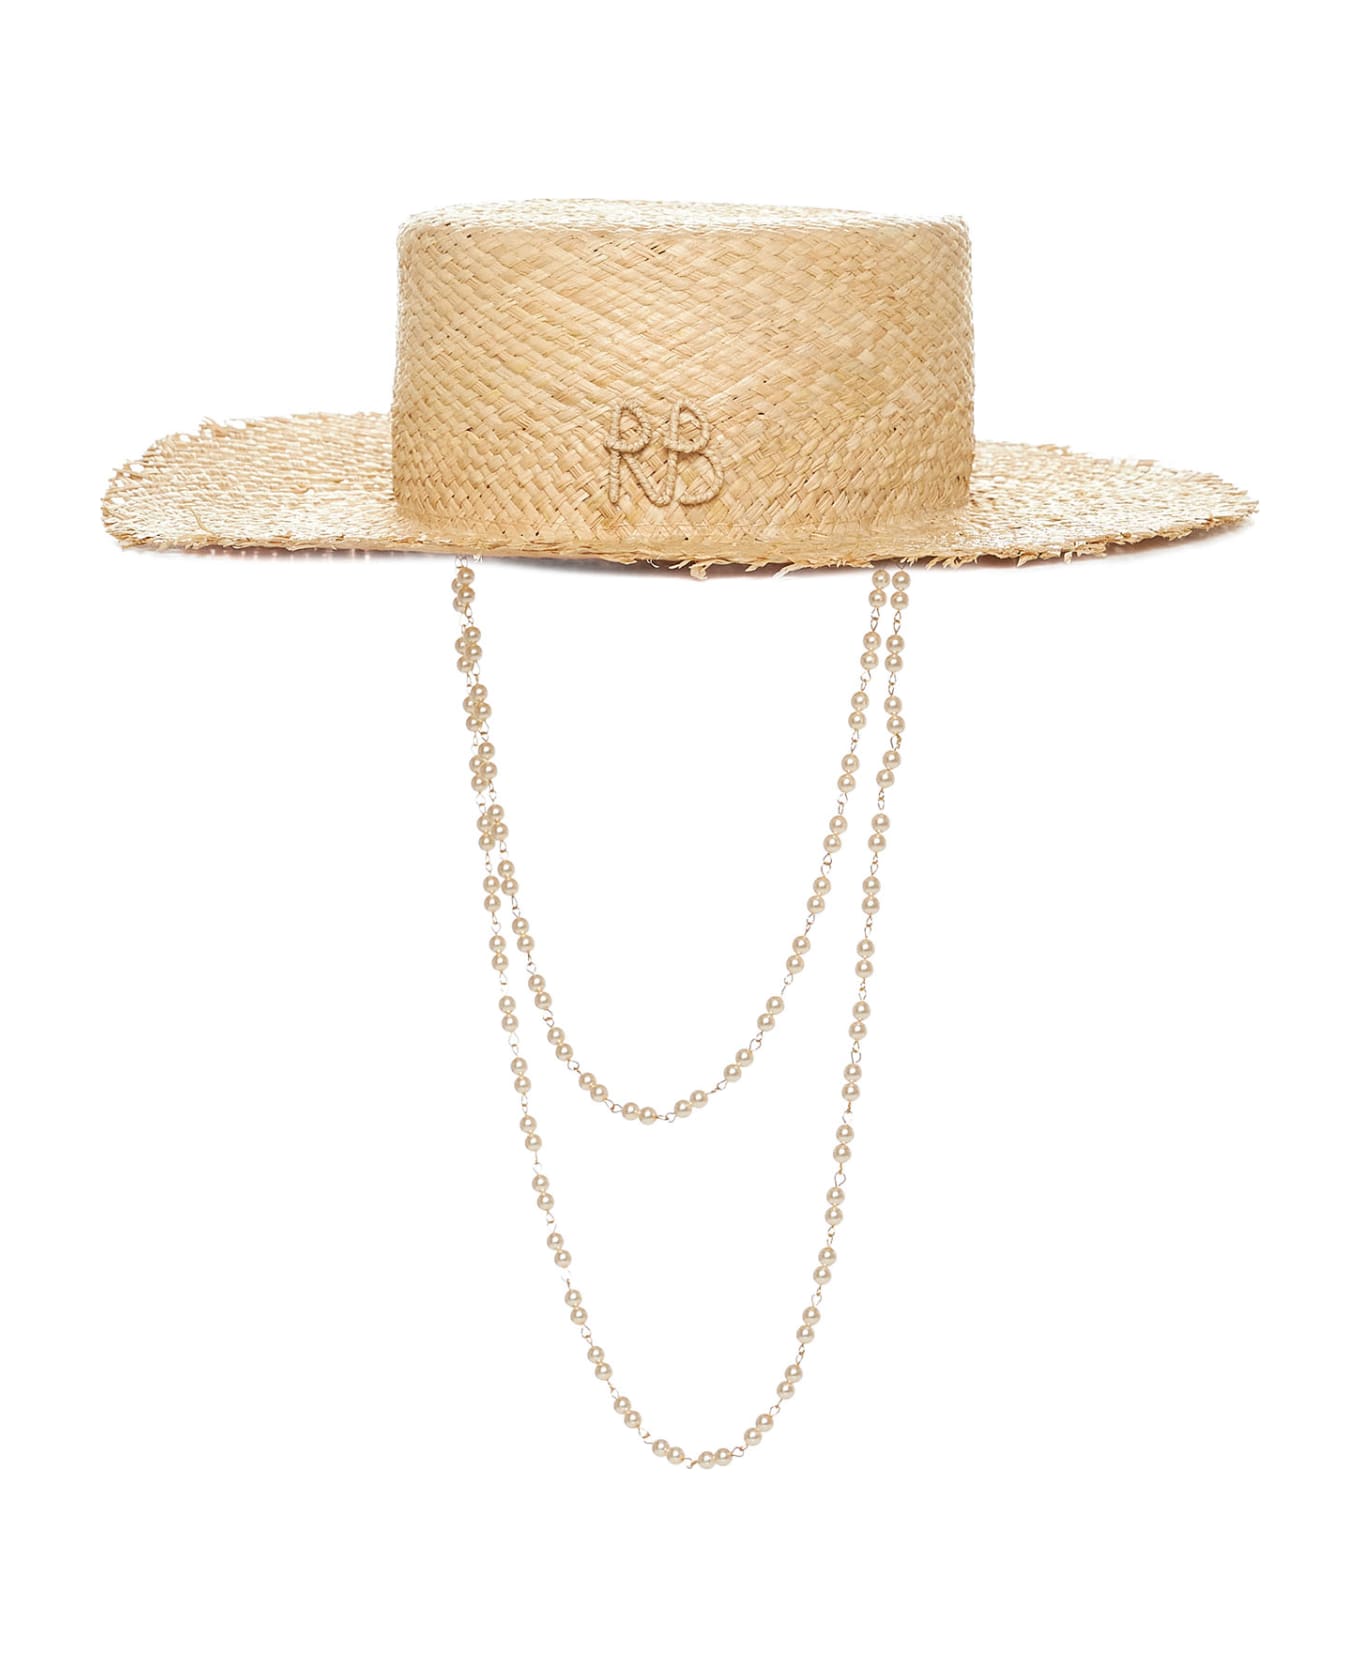 Ruslan Baginskiy Hat - Natural straw 帽子